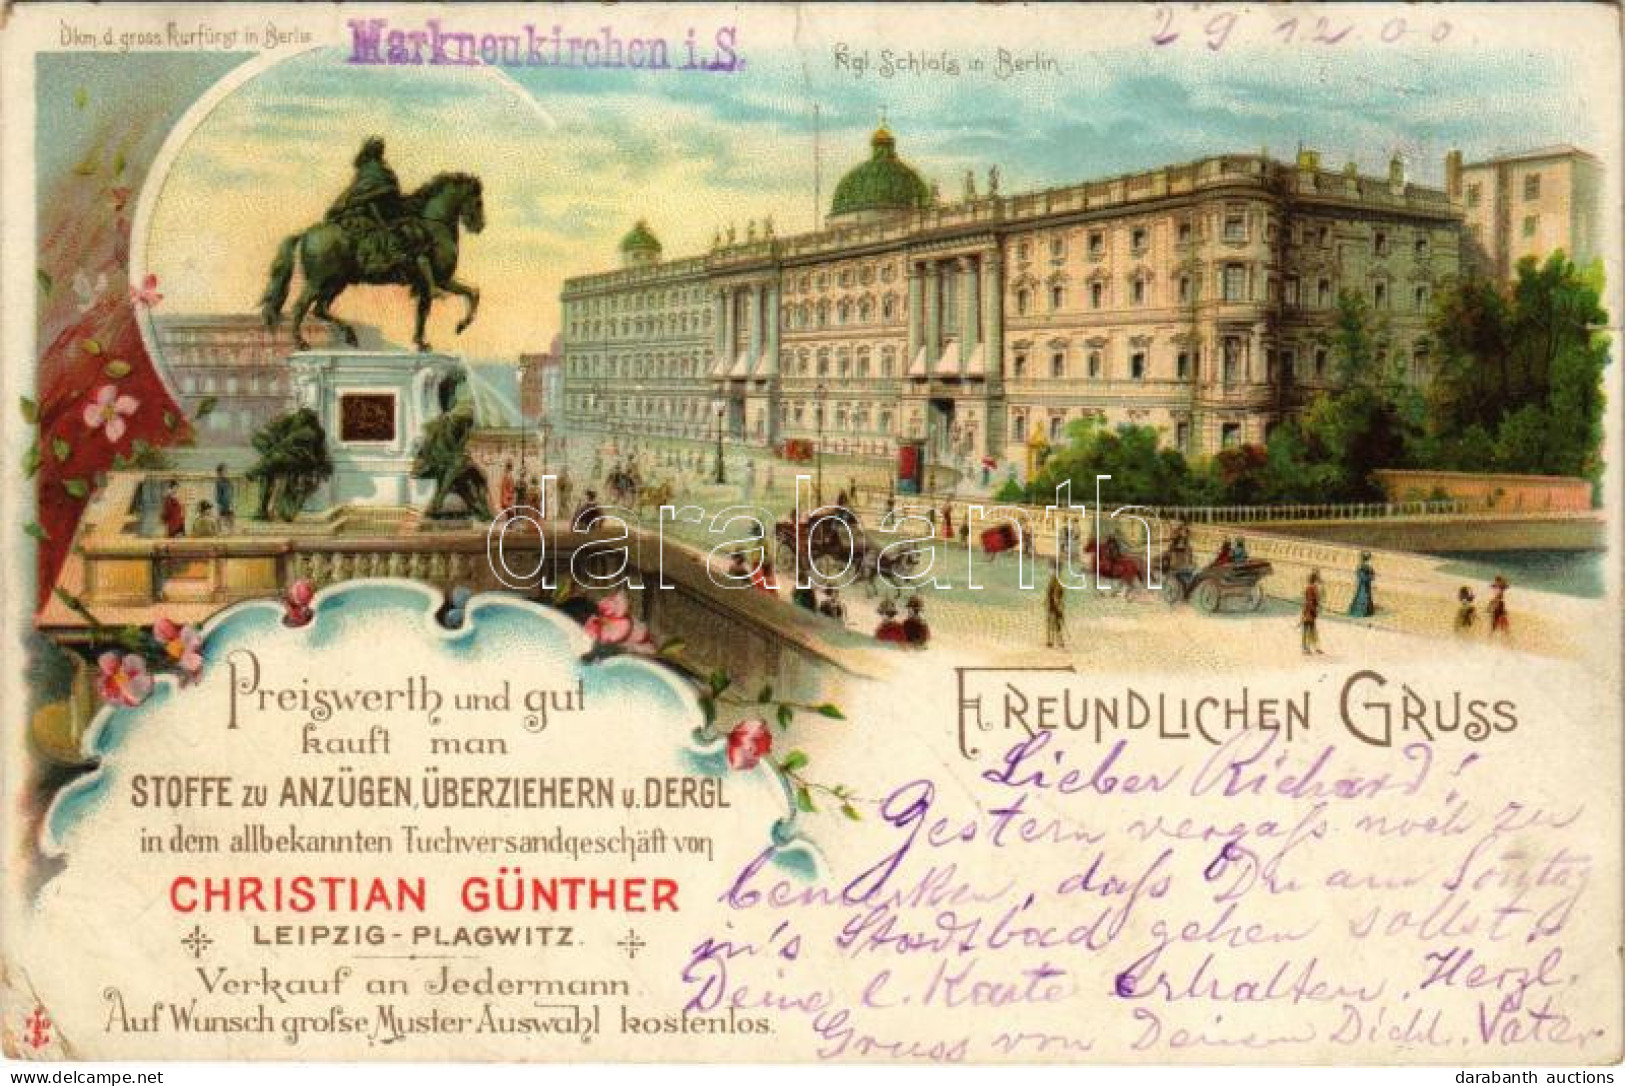 T2/T3 1900 Berlin, Denkmal D. Gross Kurfürst, Kgl. Schloss. Art Nouveau, Floral, Litho (small Tear) - Ohne Zuordnung